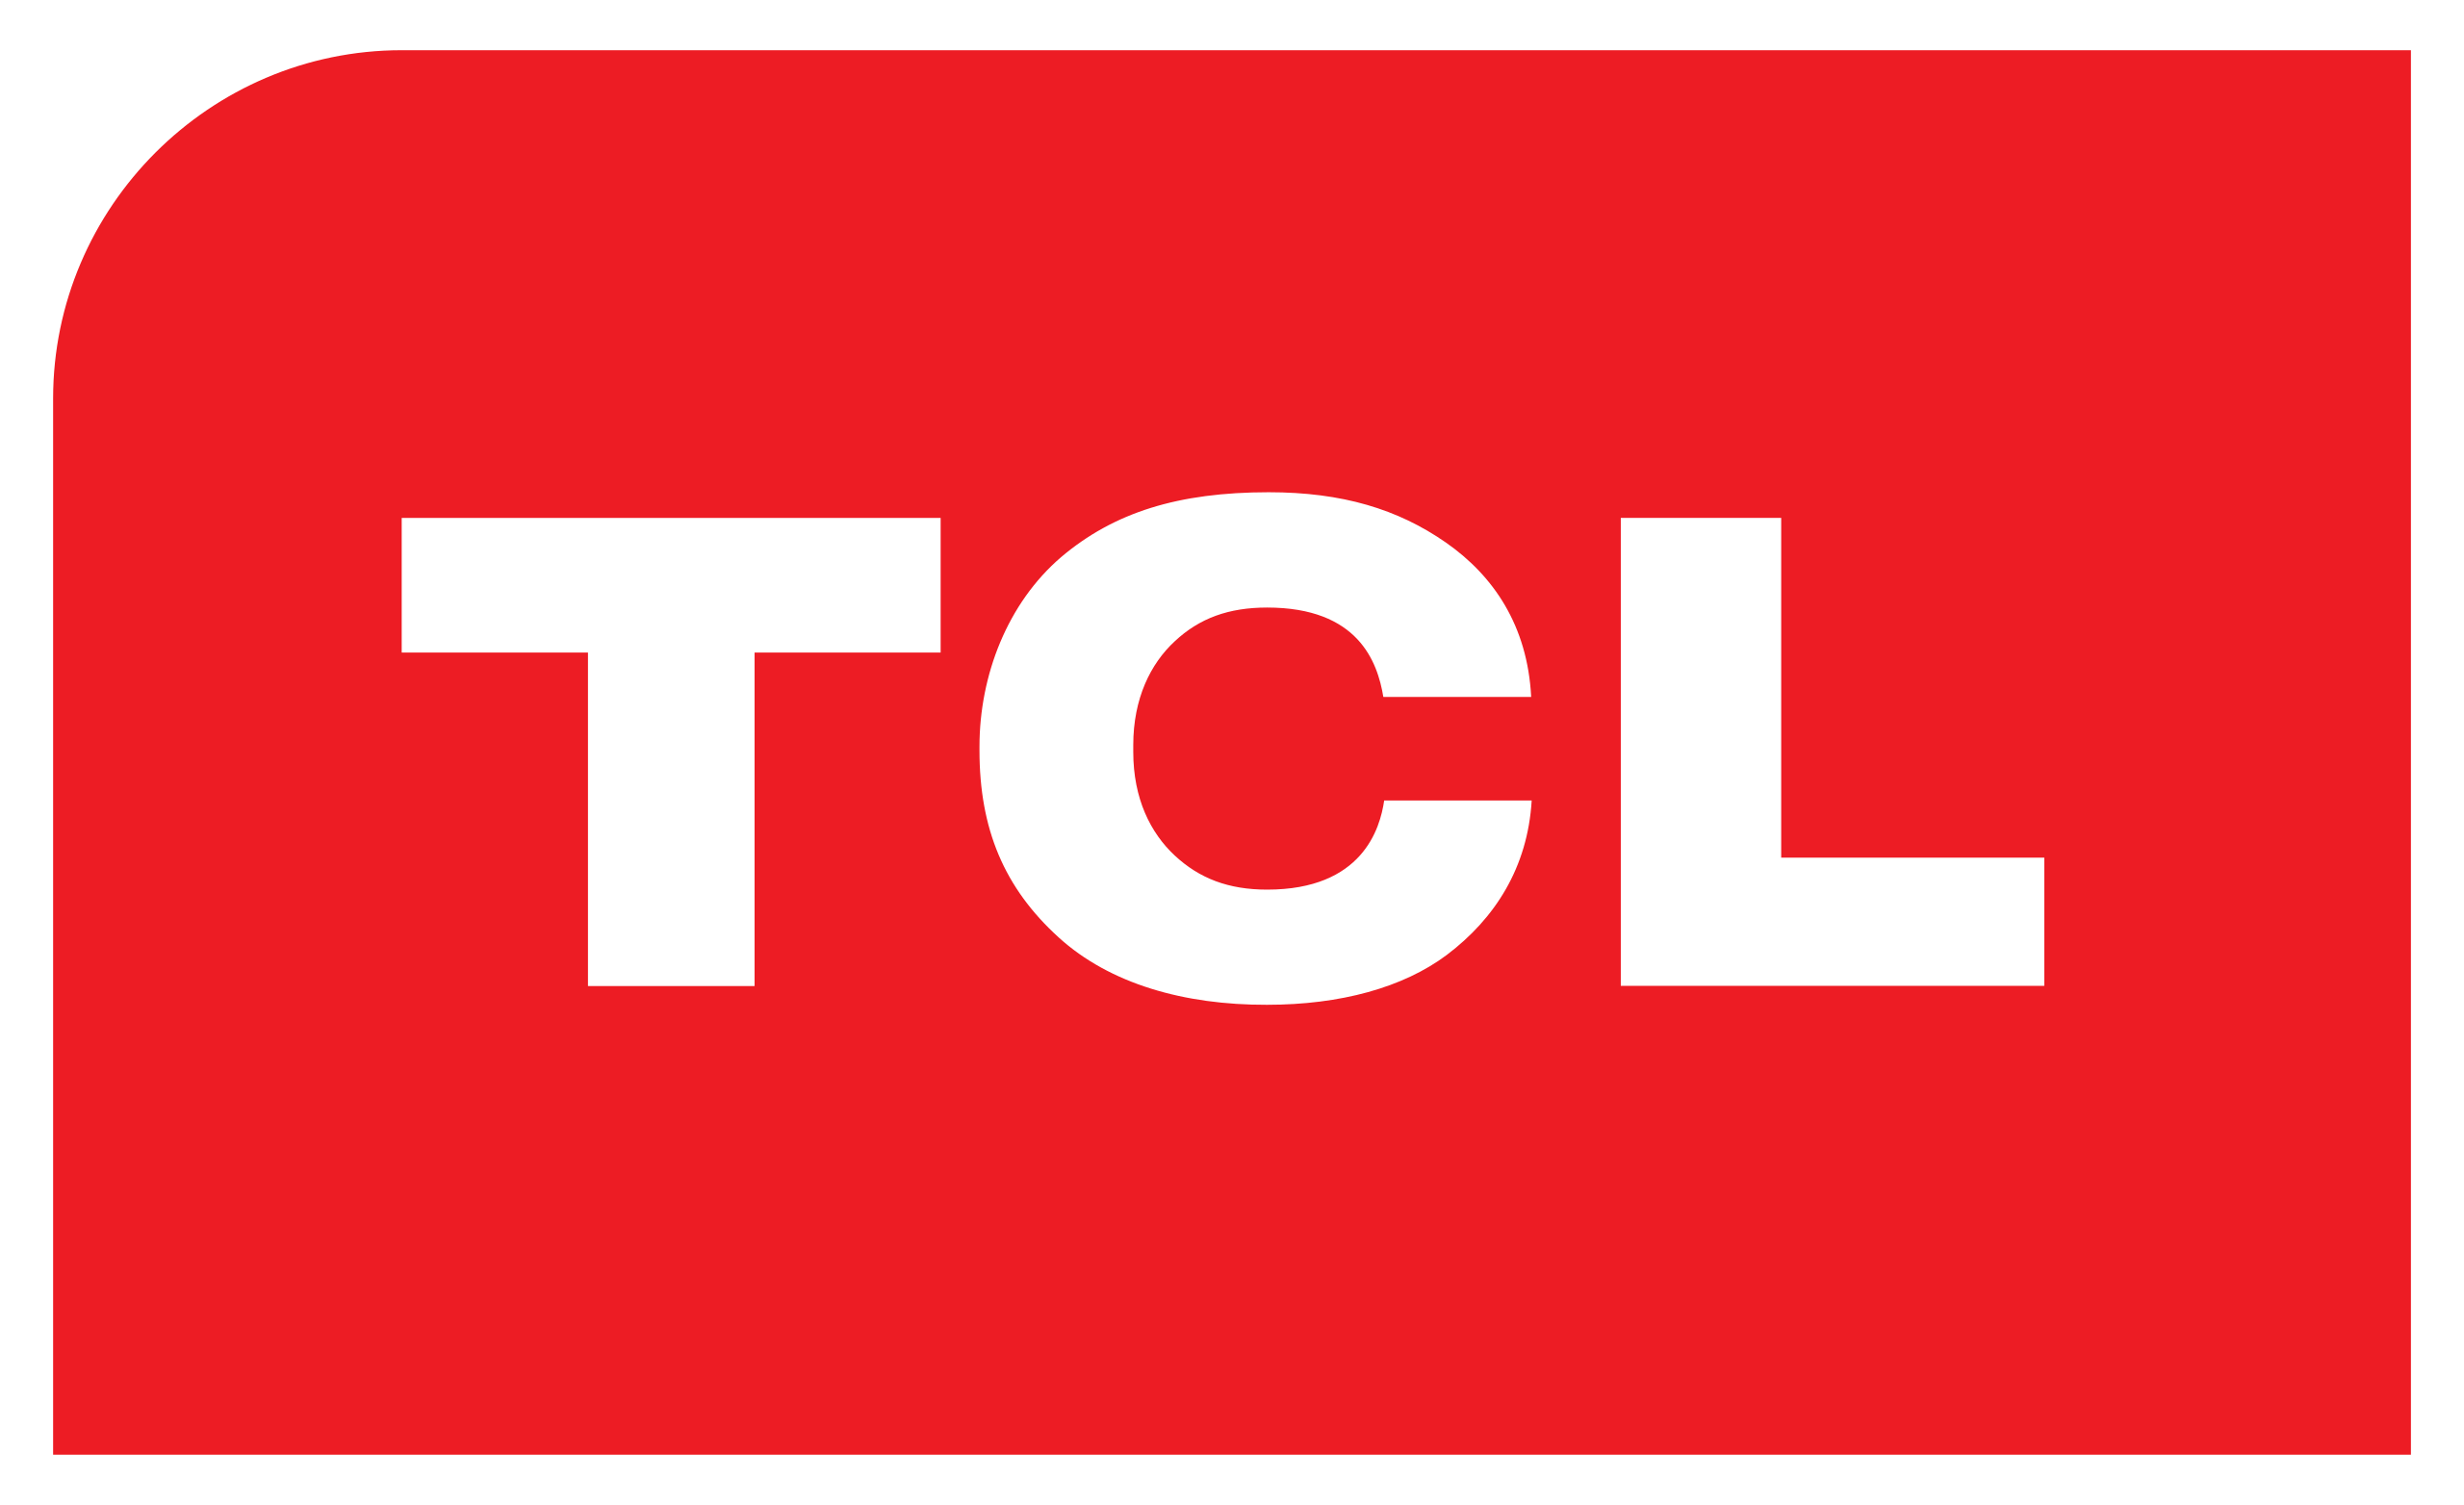 LOGO TCL